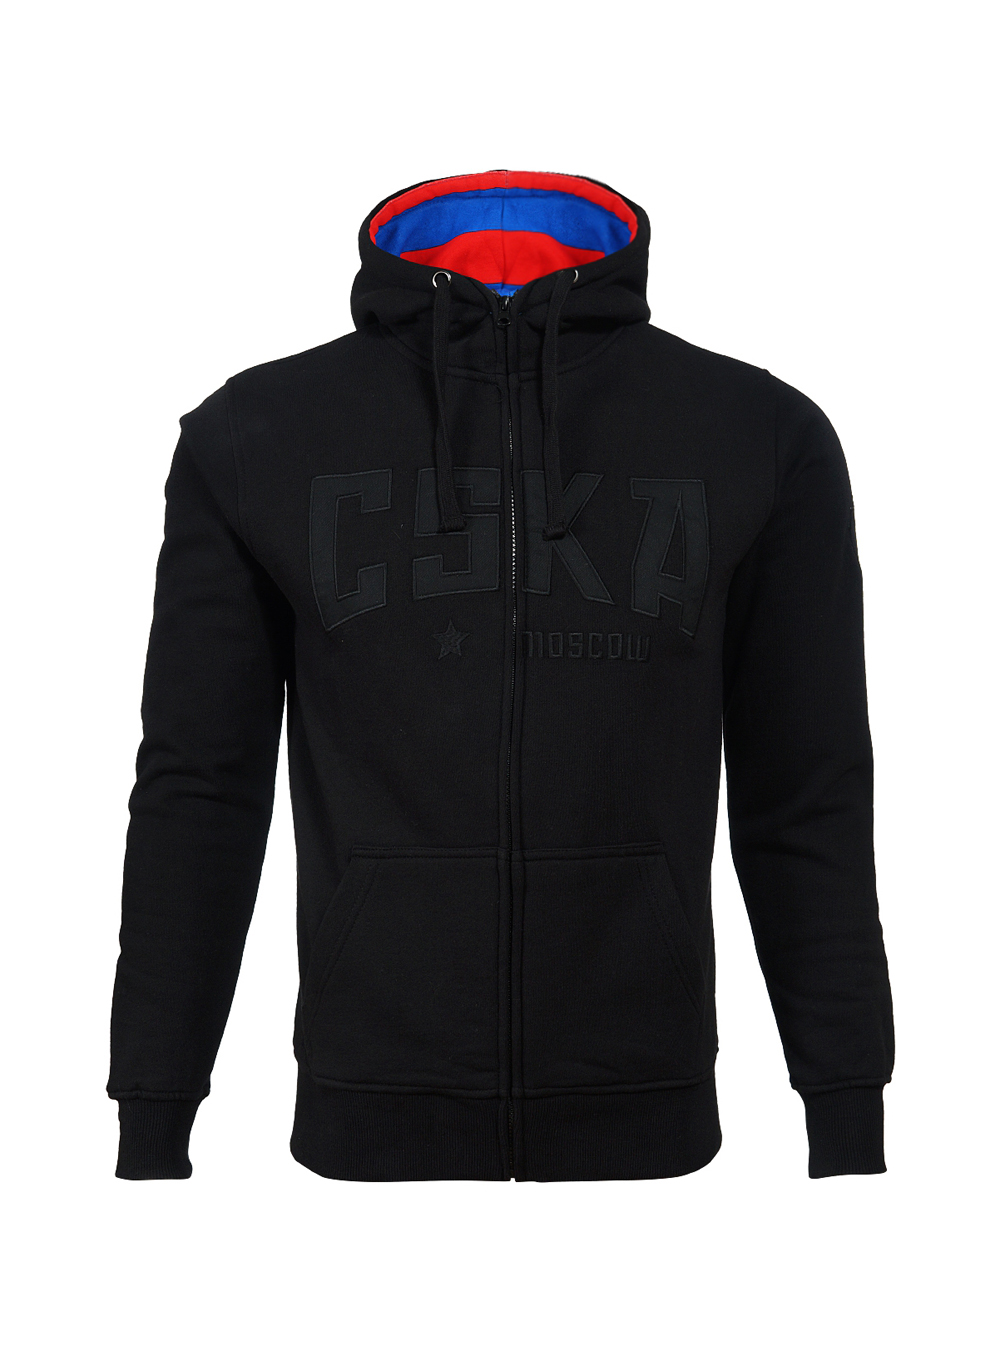 Толстовка на молнии с капюшоном "CSKA", цвет черный (S) от Cskashop